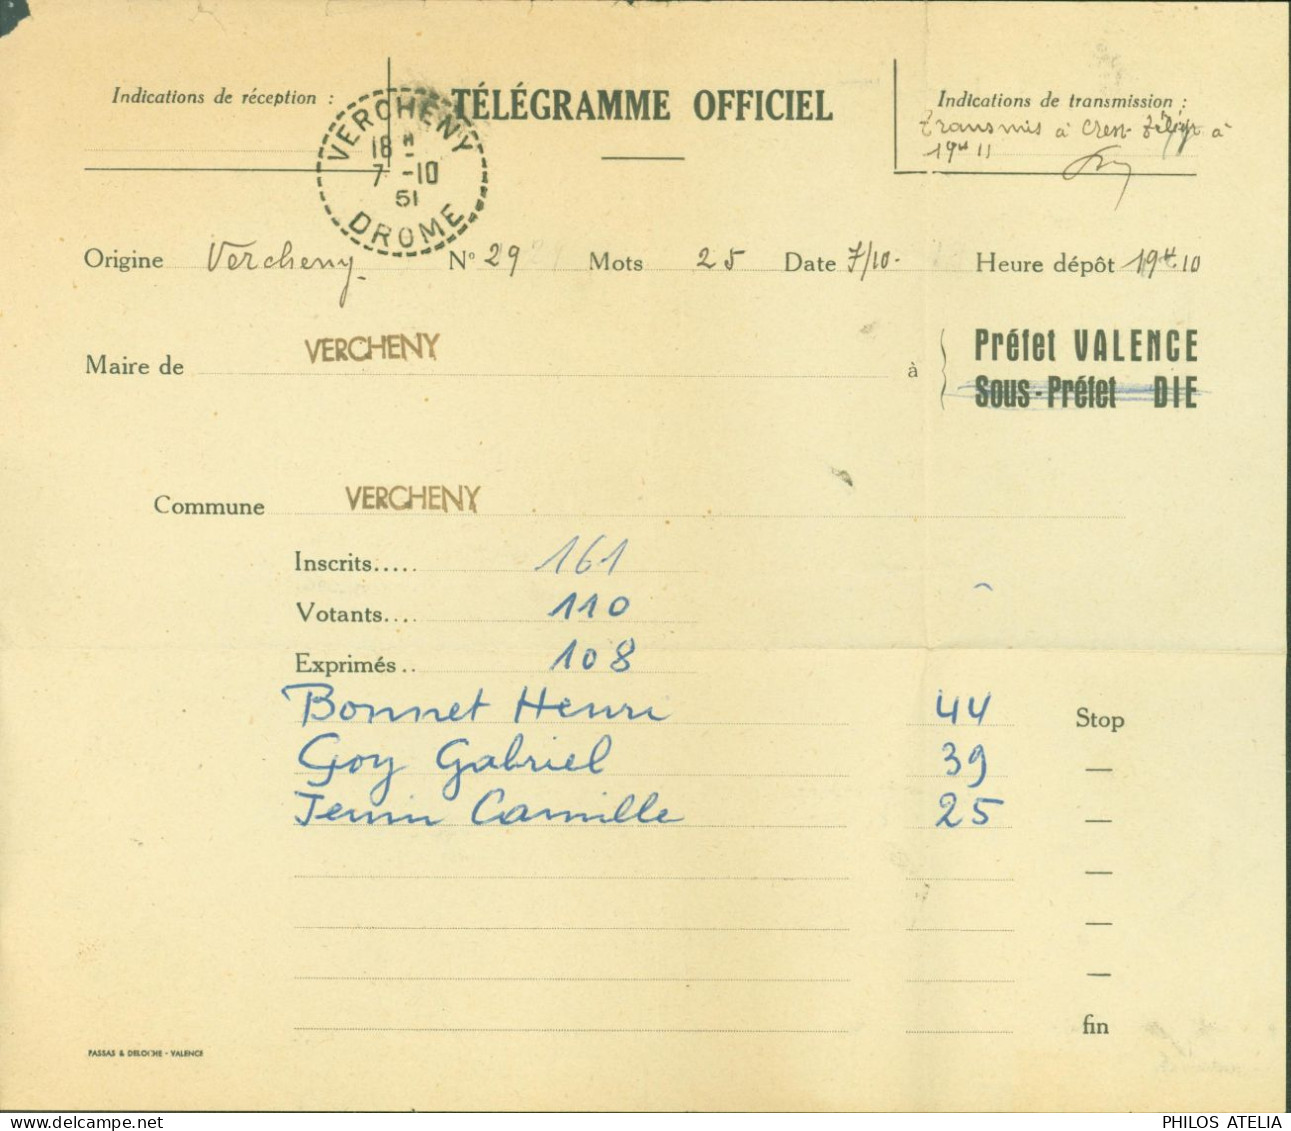 Télégramme Officiel Drôme CAD Perlé Vercheny Drôme 7 10 1951 Résultat élections - Télégraphes Et Téléphones